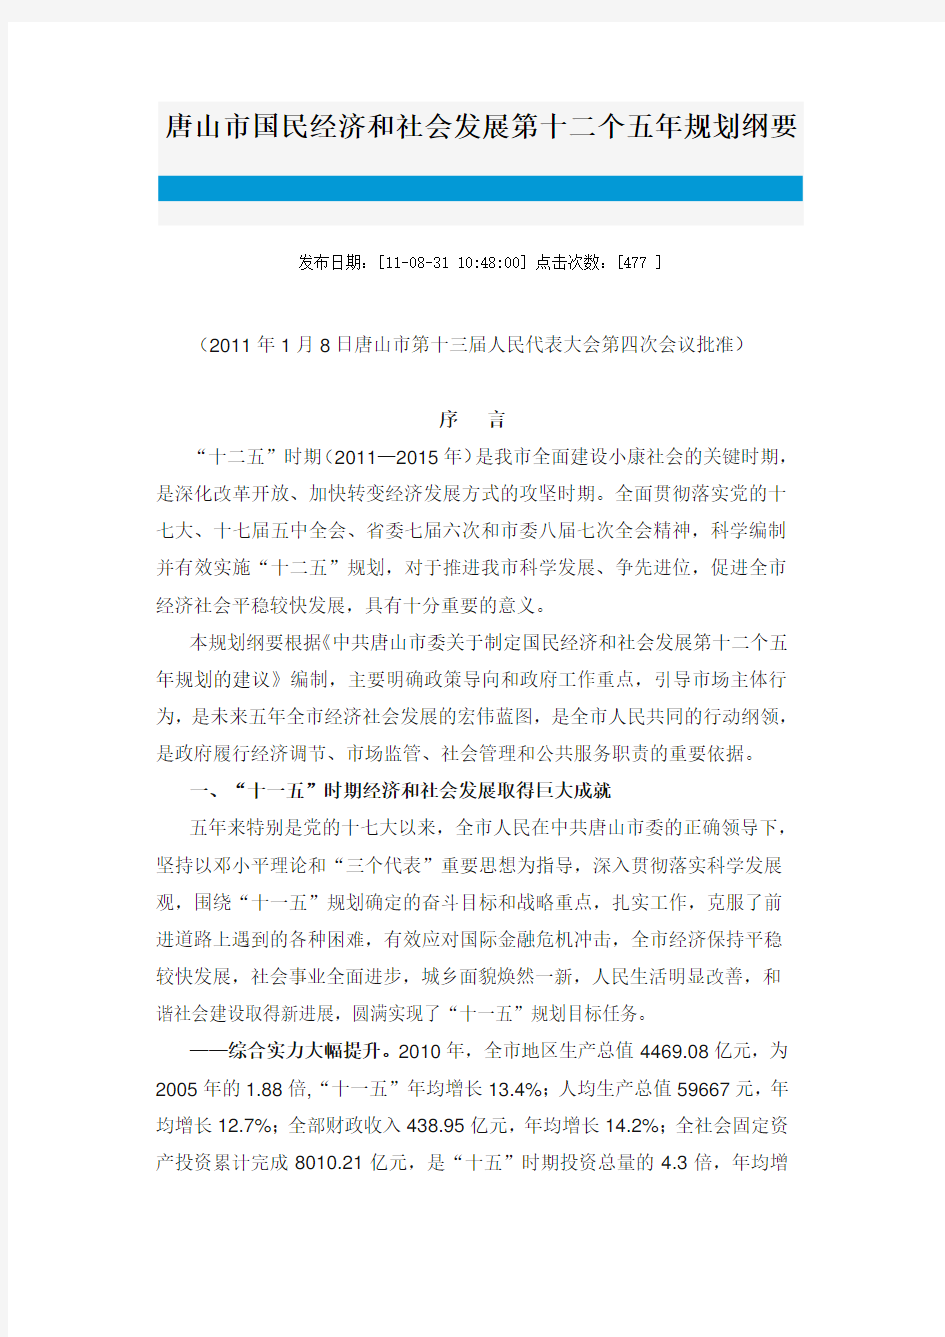 唐山市国民经济和社会发展第十二个五年规划纲要